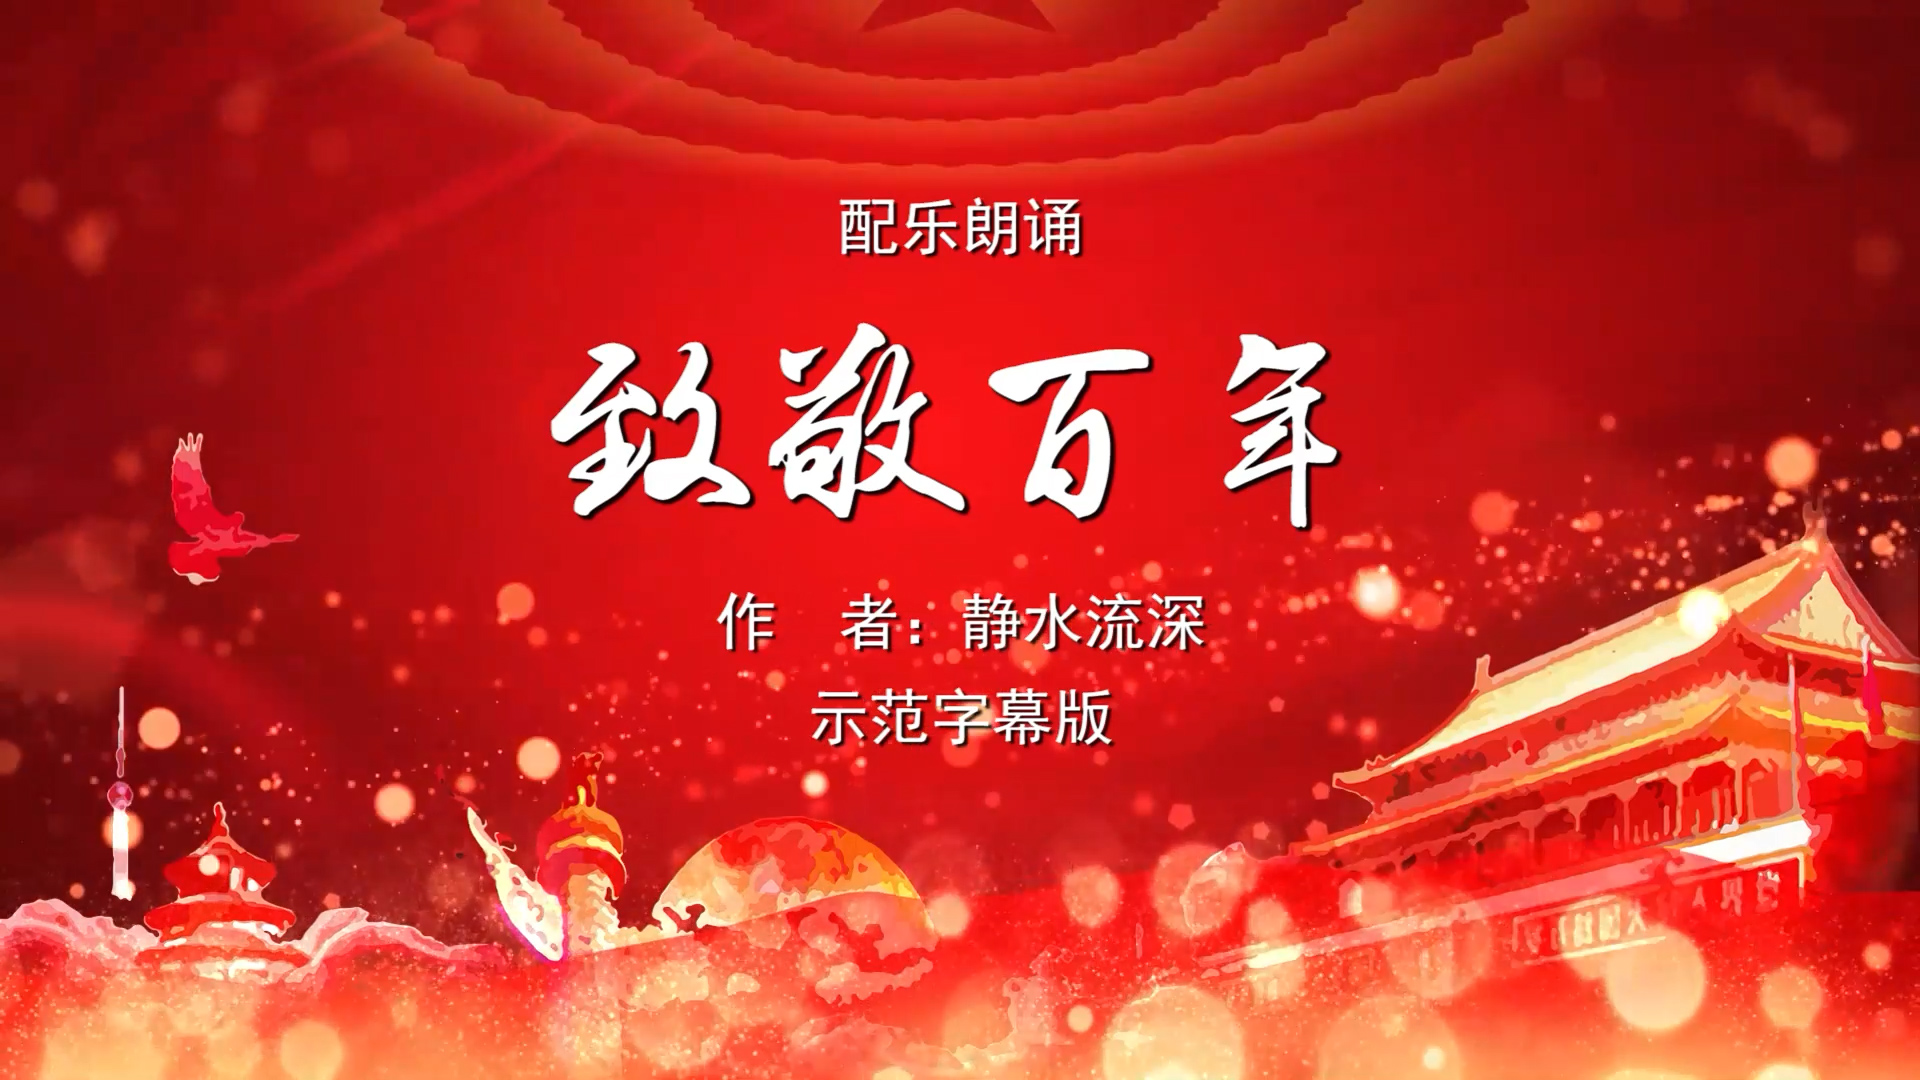 致敬百年——献给中国共产党成立一百周年 诗歌朗诵配乐伴奏舞台演出LED背景视频素材TV